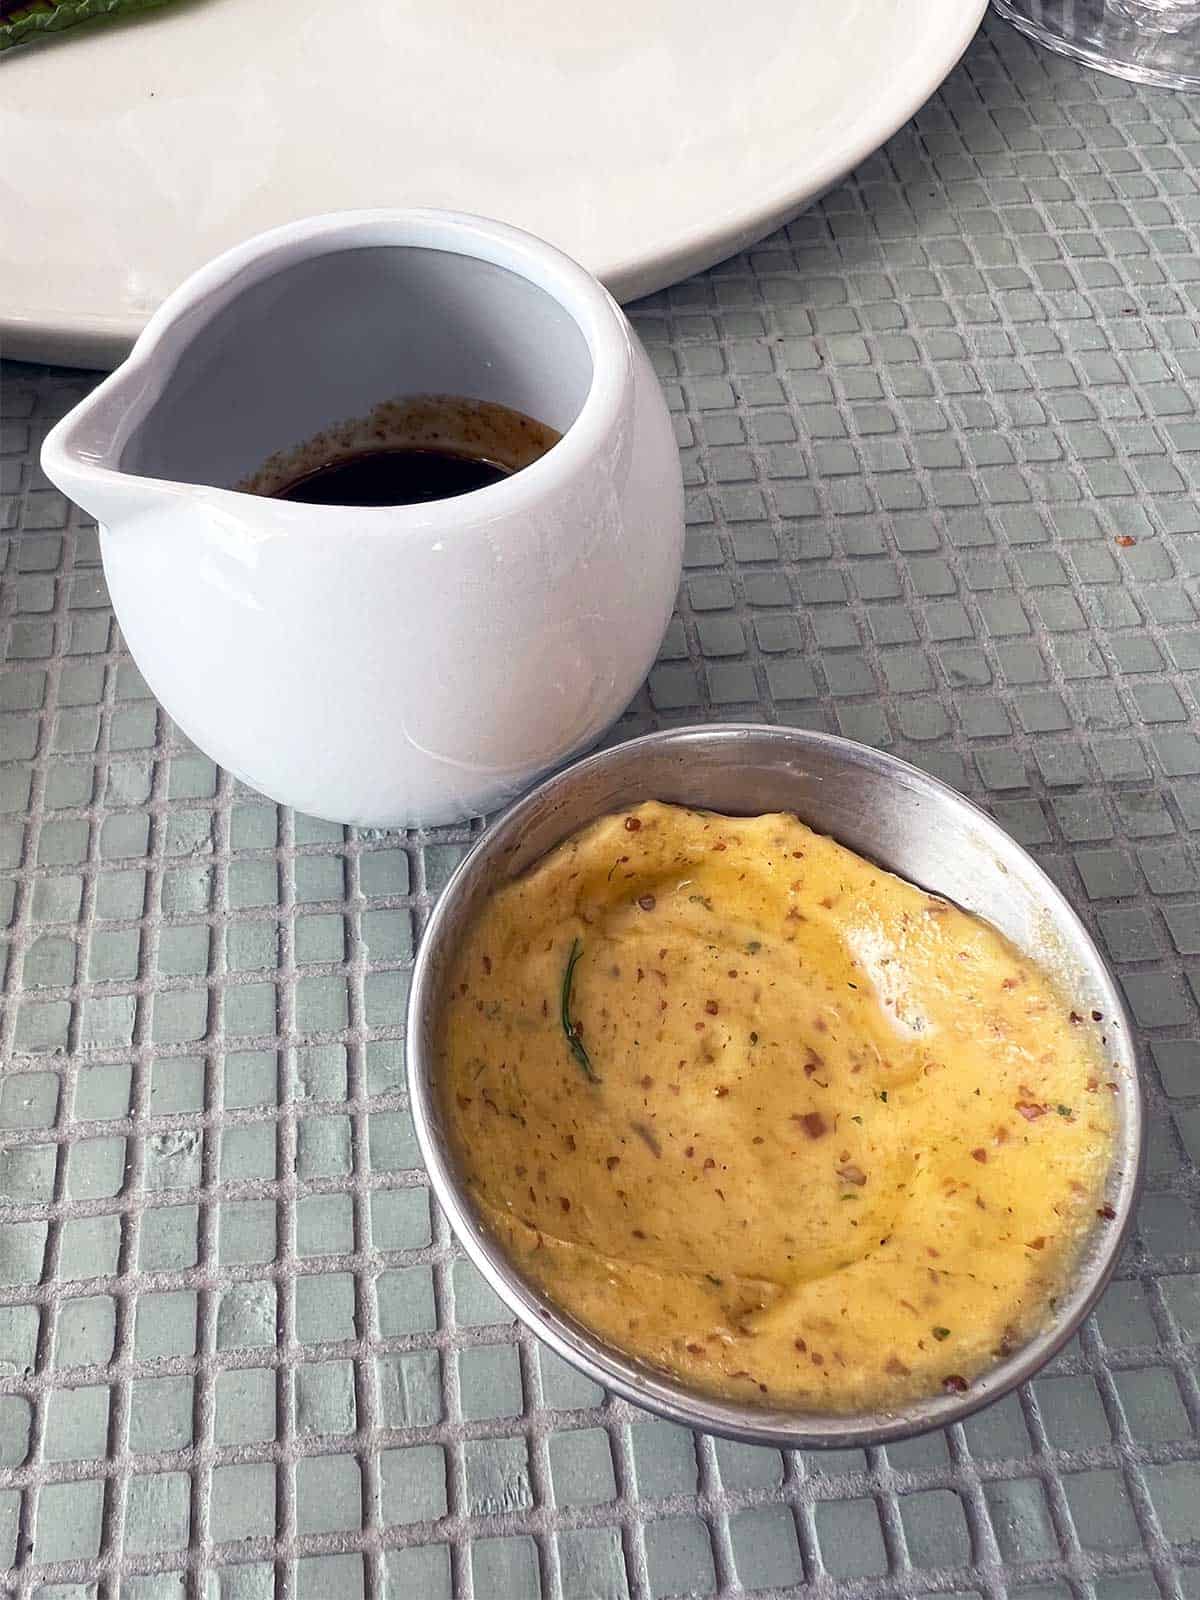 Bowl of mustard and jug of jus.